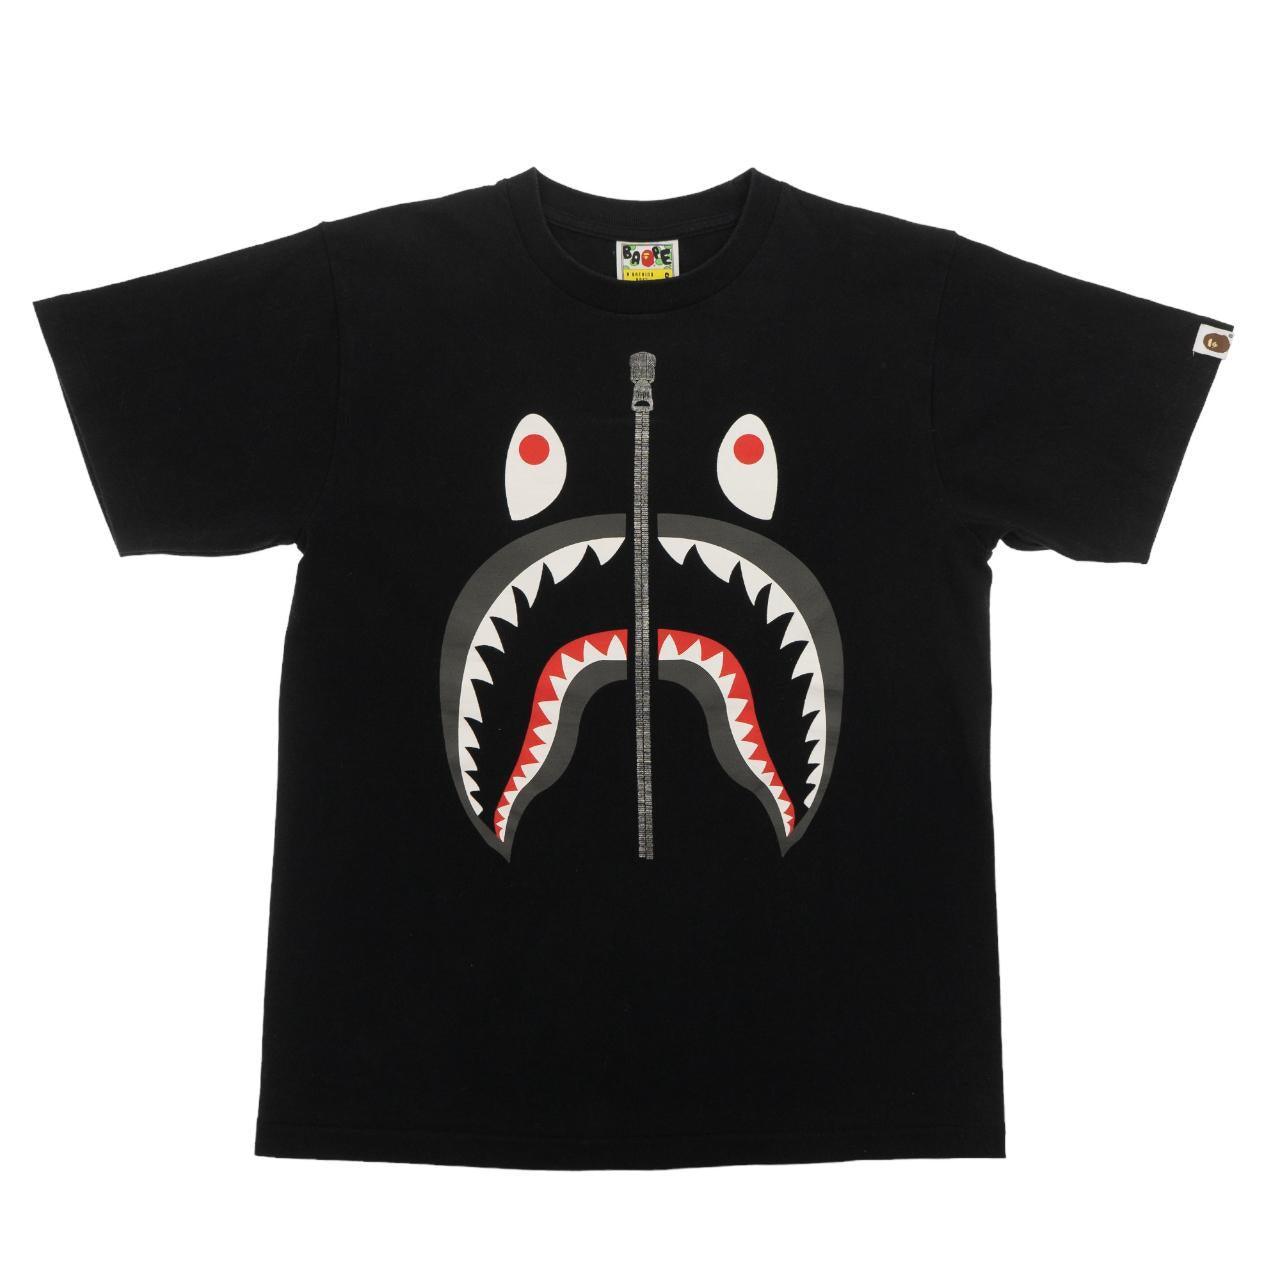 Vintage Bape Shark T Shirt Size XS - Known Source